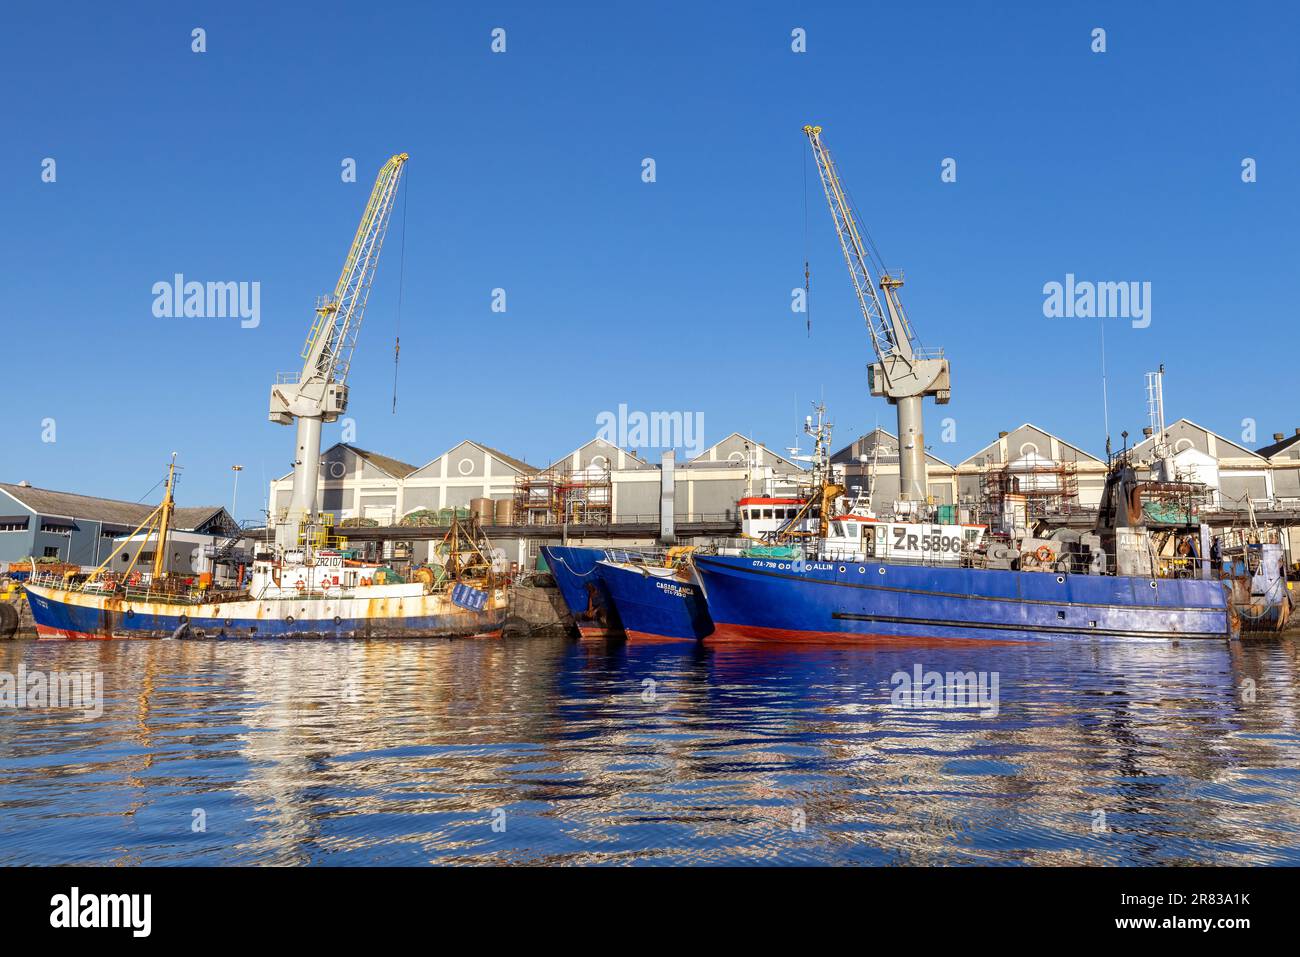 Gewerbliche Fischerboote im Hafen an der V&A Waterfront - Kapstadt, Südafrika Stockfoto